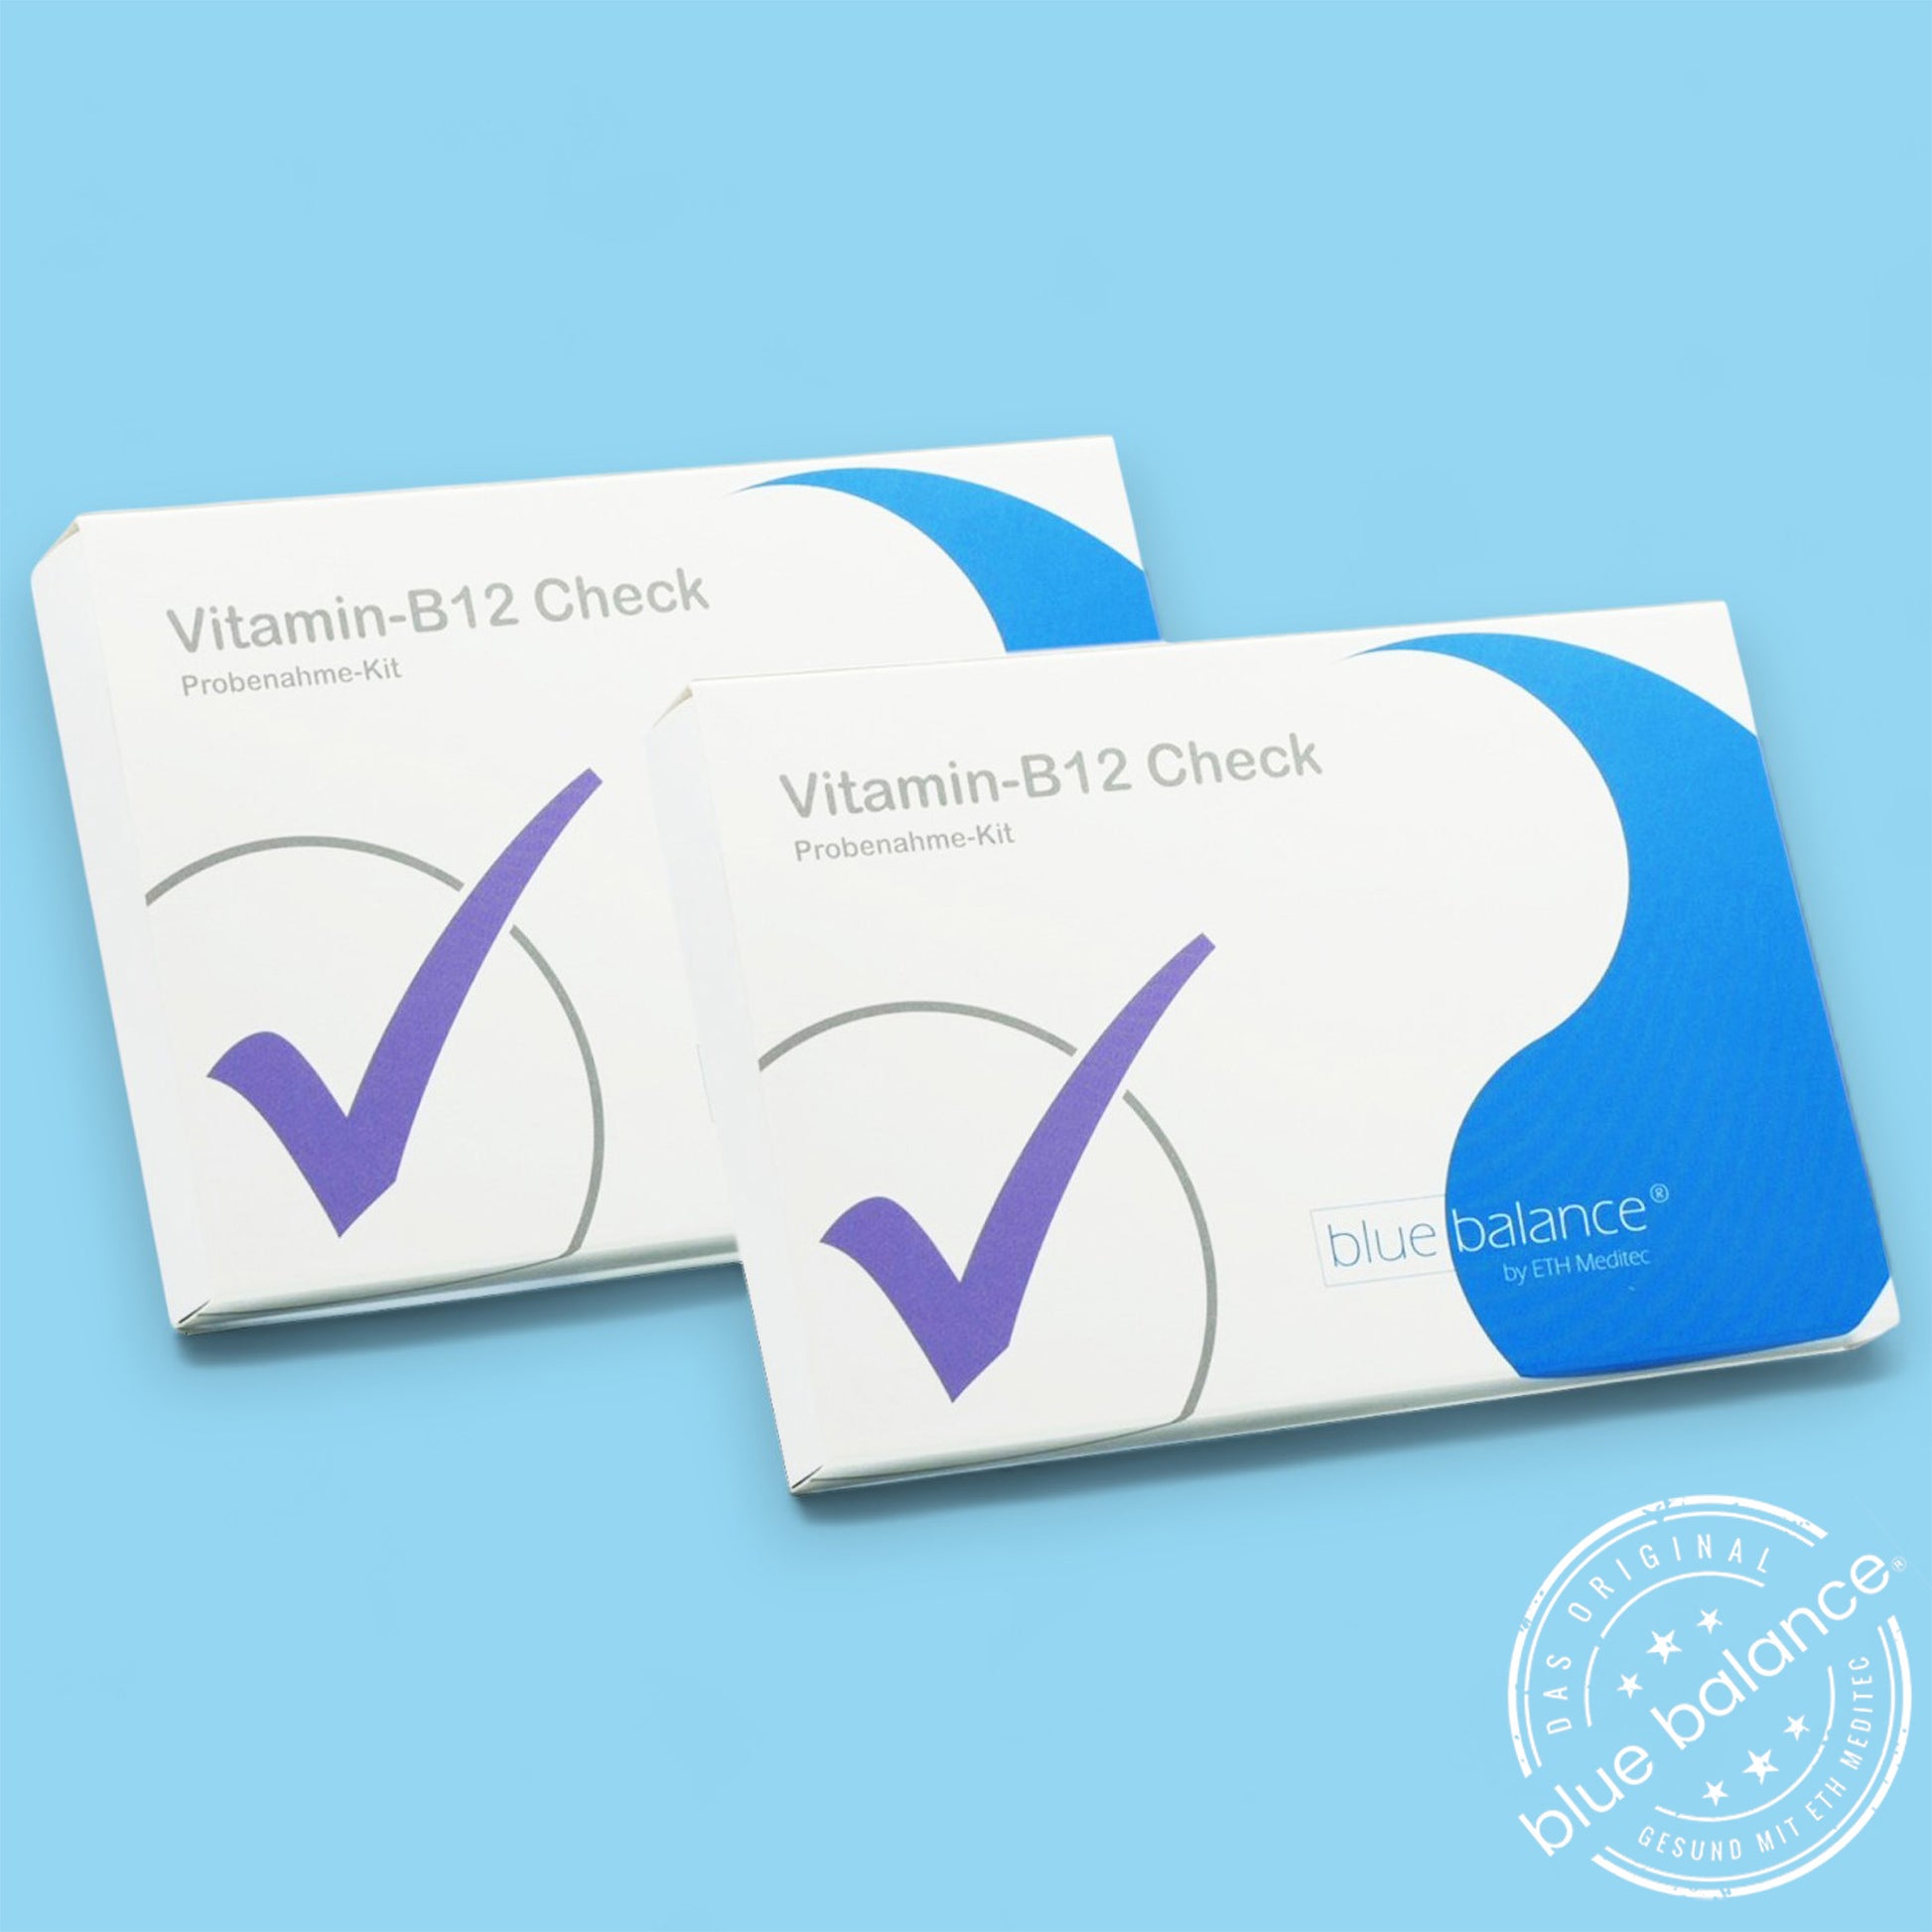 Nutzen Sie den benutzerfreundlichen Blue Balance® Vitamin B12 Test von Eth Meditec, um Ihren B12-Spiegel mühelos zu überprüfen.